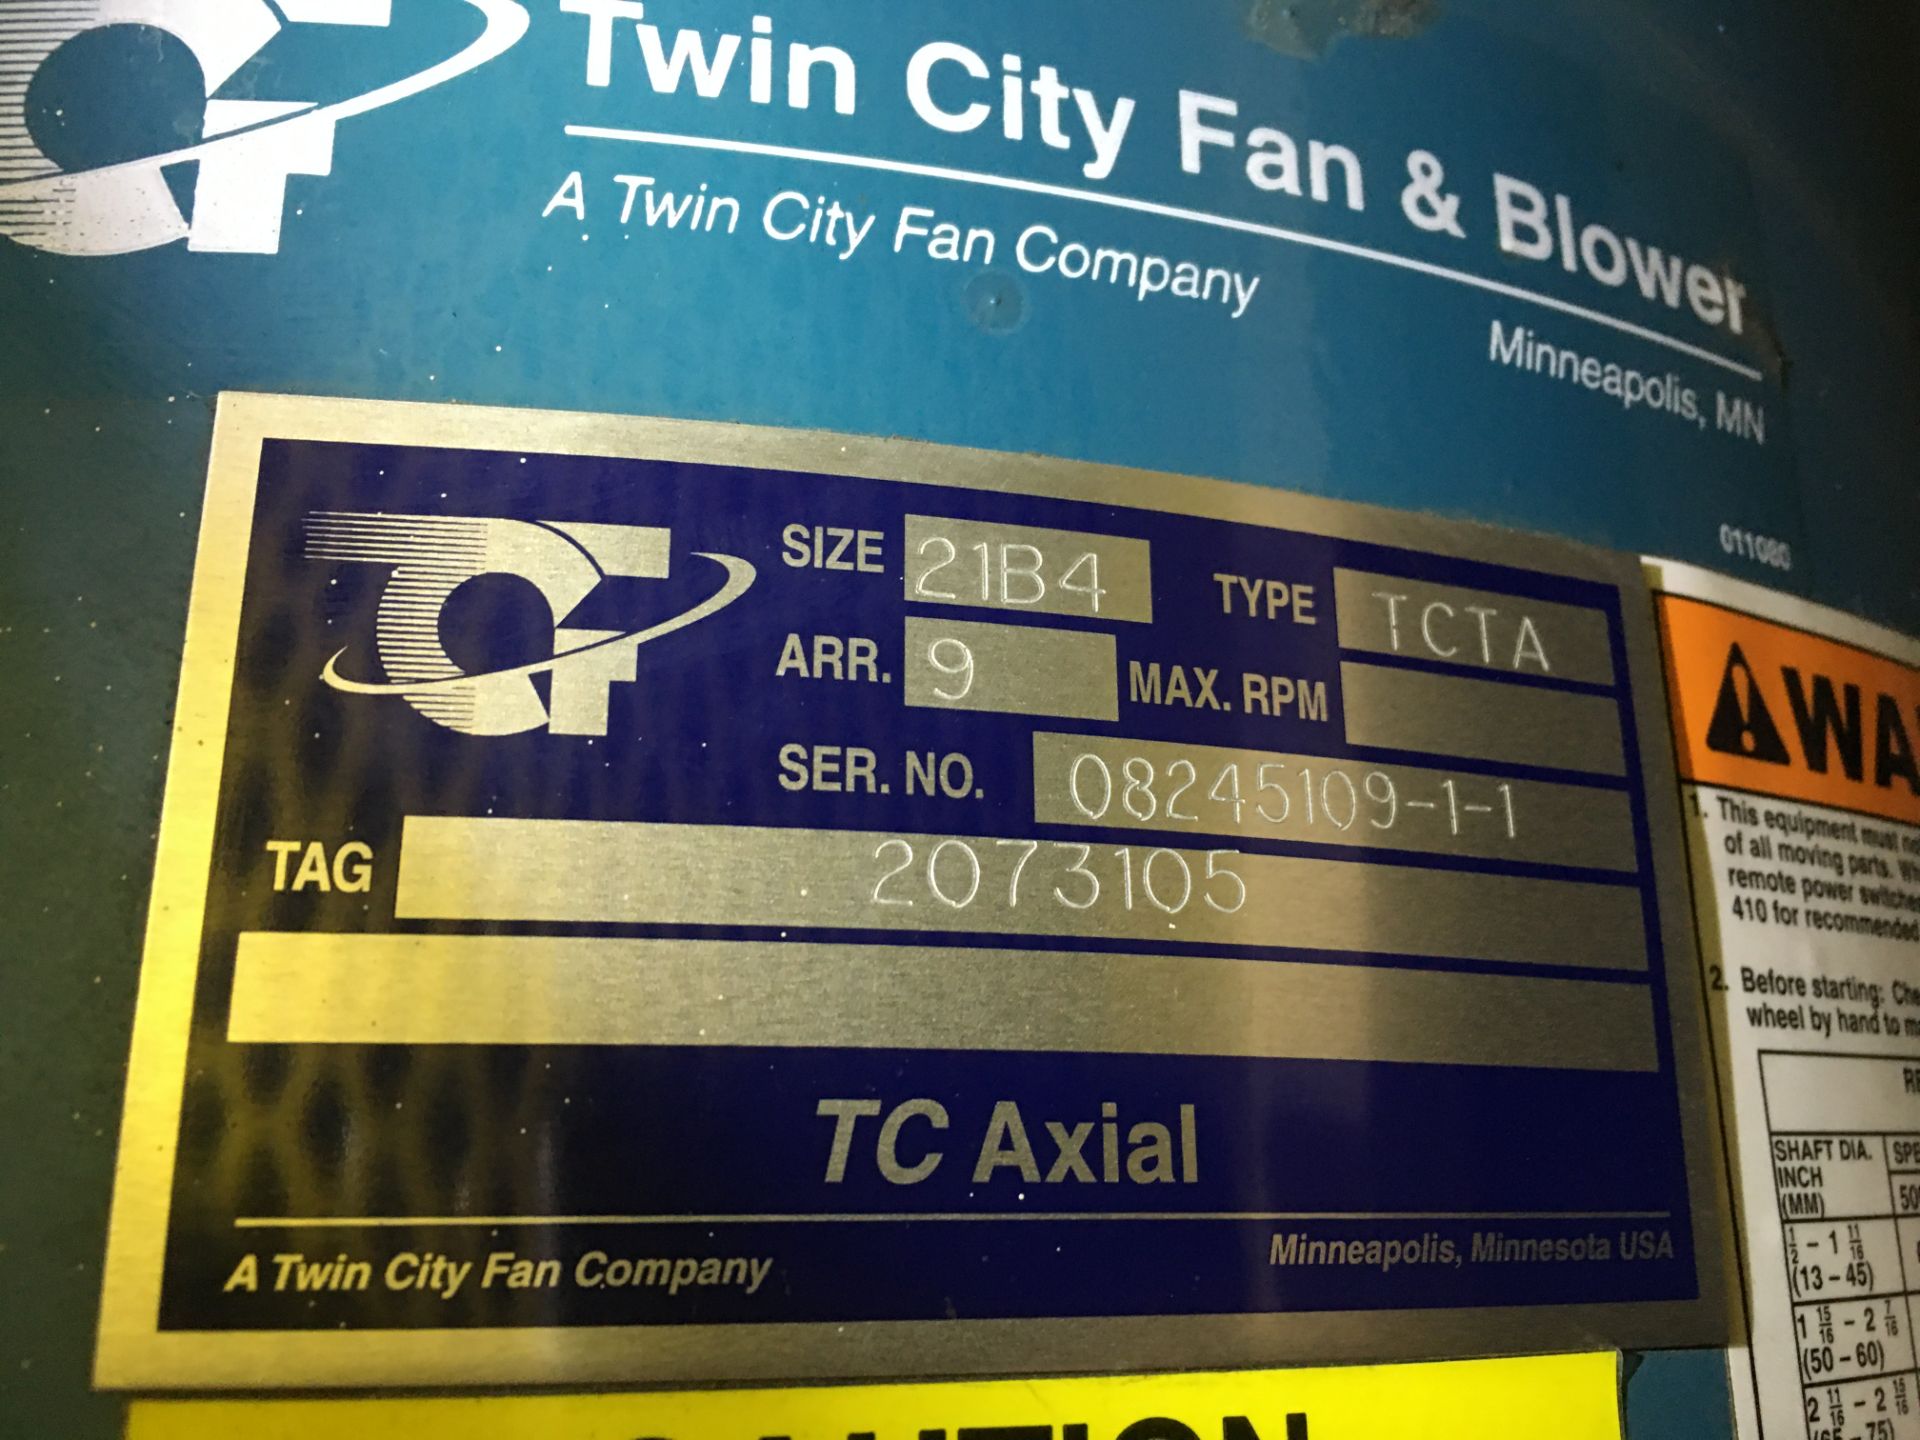 Twin City Fan & Blower - Image 3 of 4